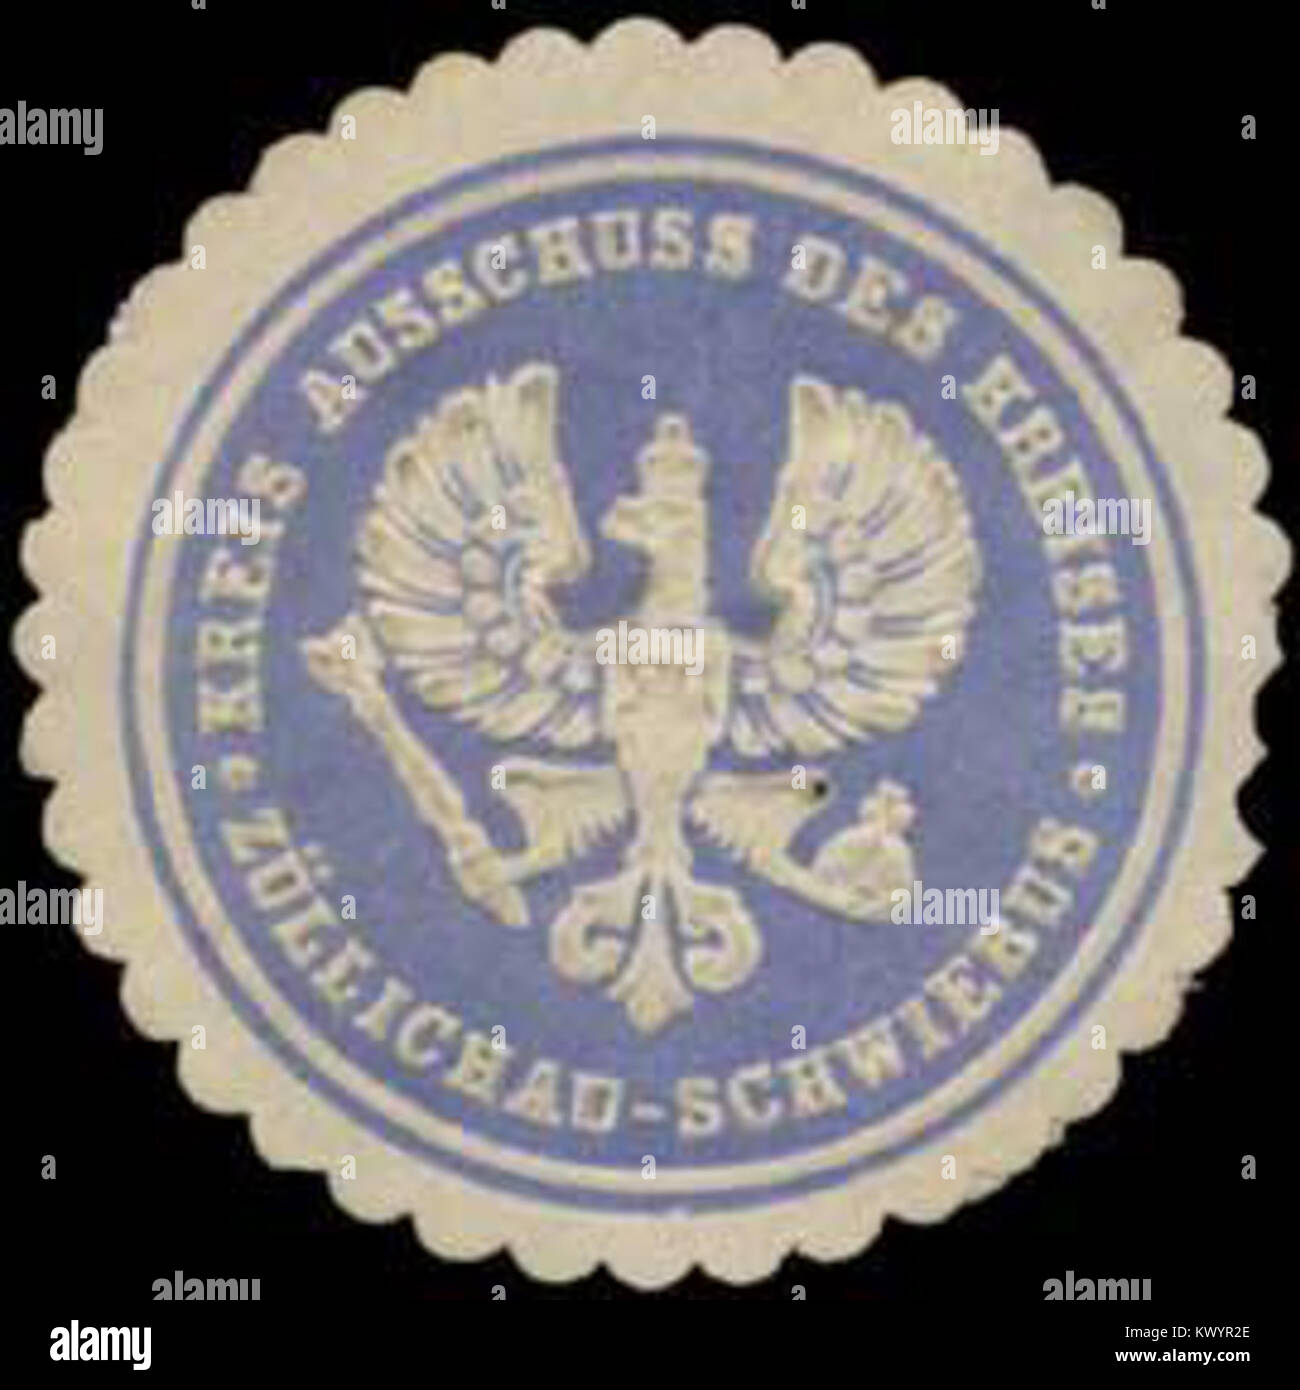 Kreis Siegelmarke Ausschuss des Kreises Züllichau-Schwiebus W0387890 Foto de stock